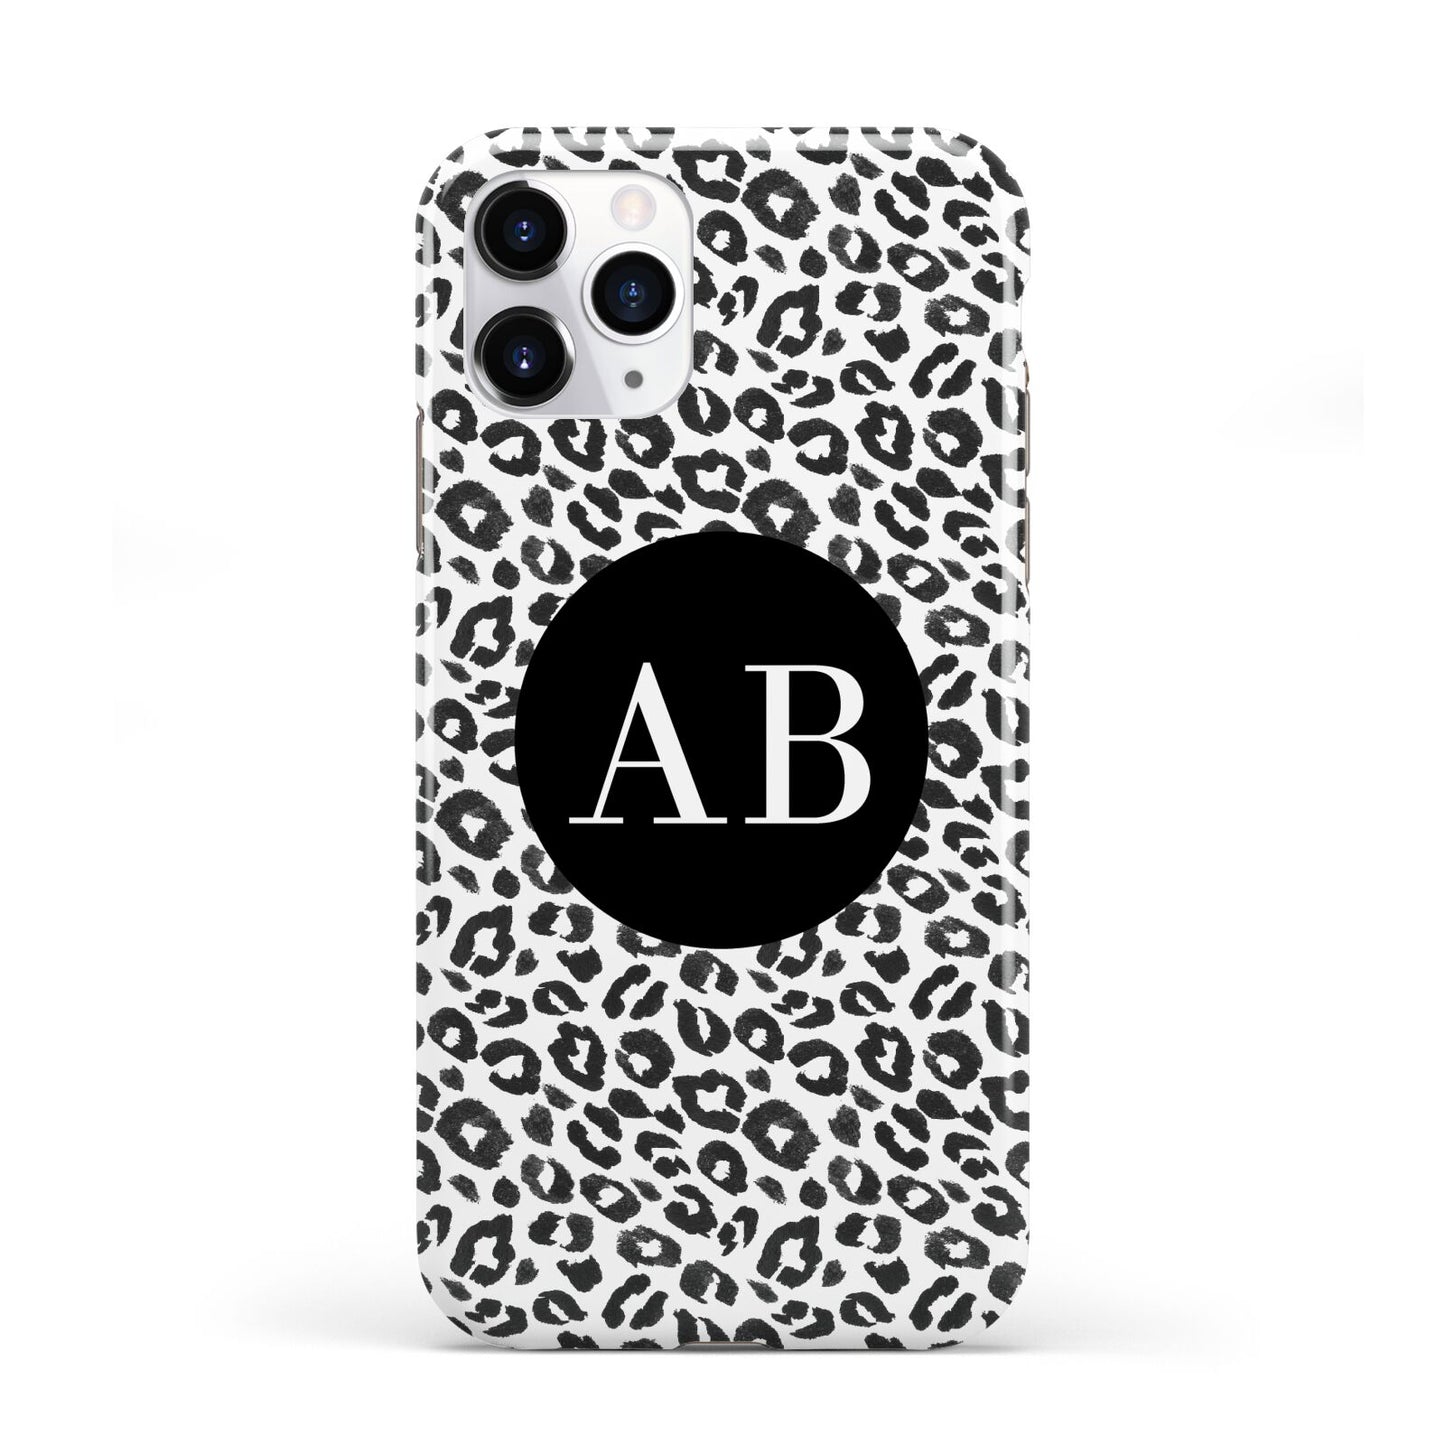 Leopard Print Black and White iPhone 11 Pro 3D Tough Case